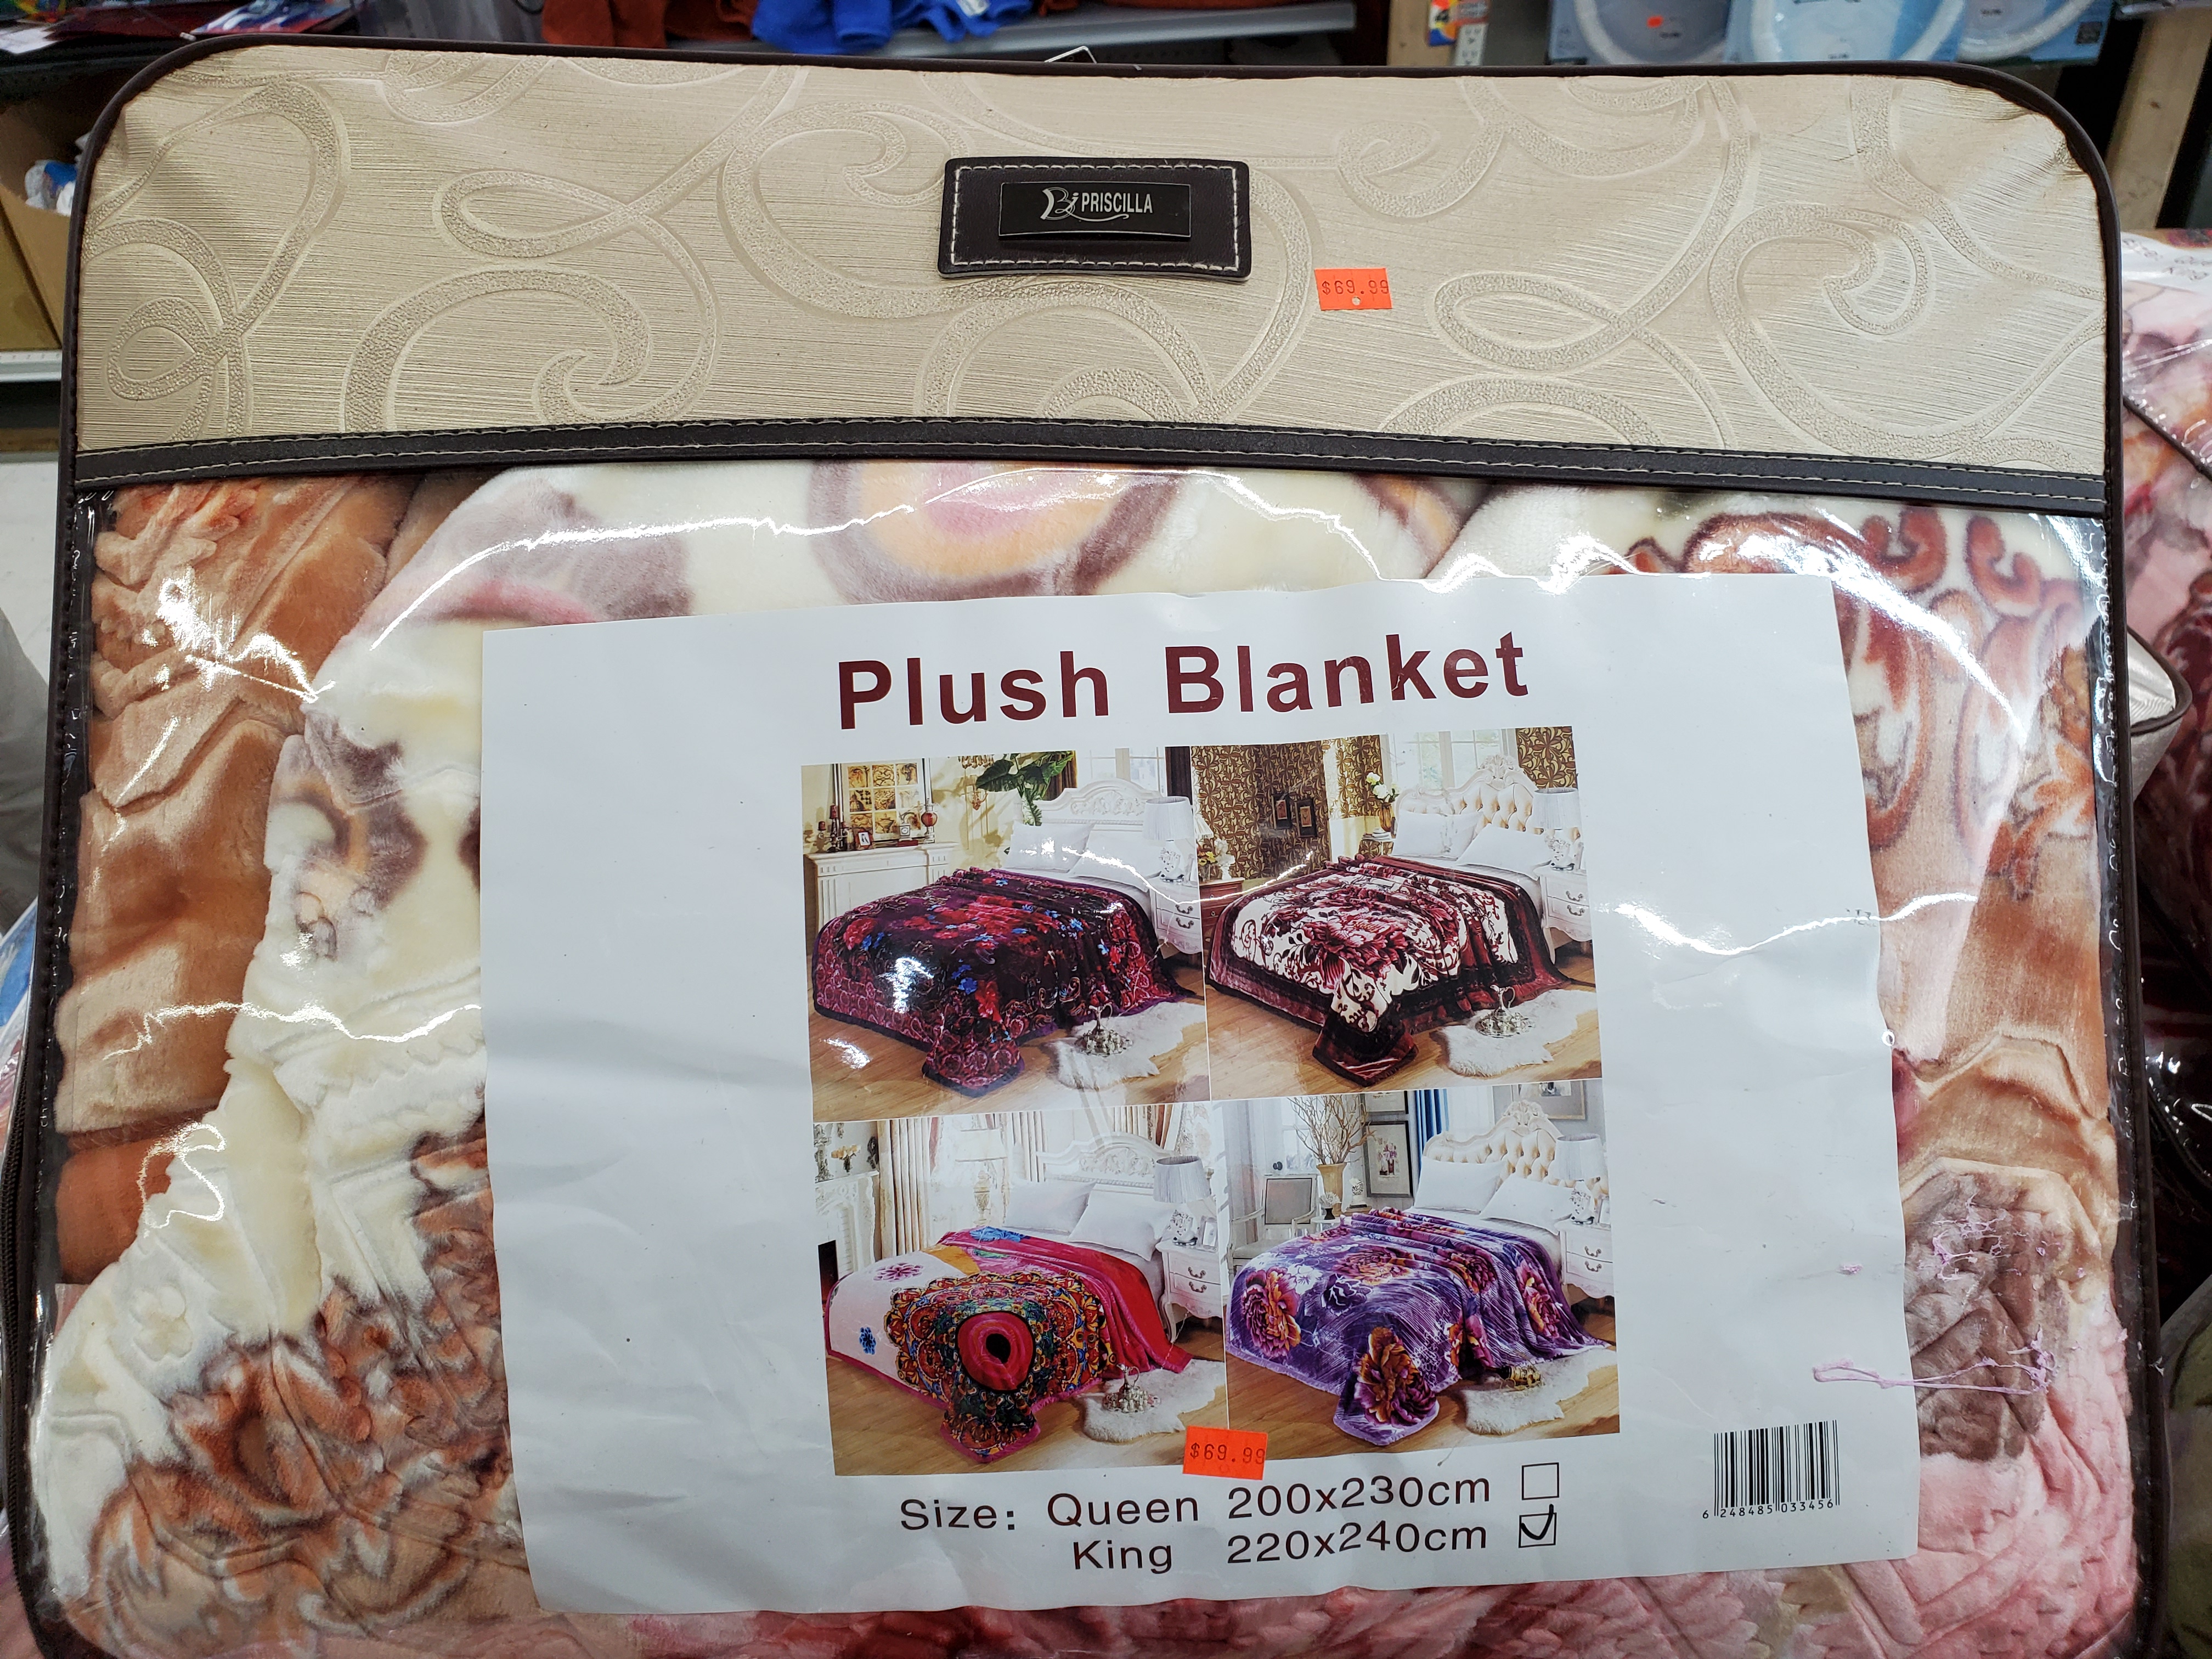 Plush Blanket King Size